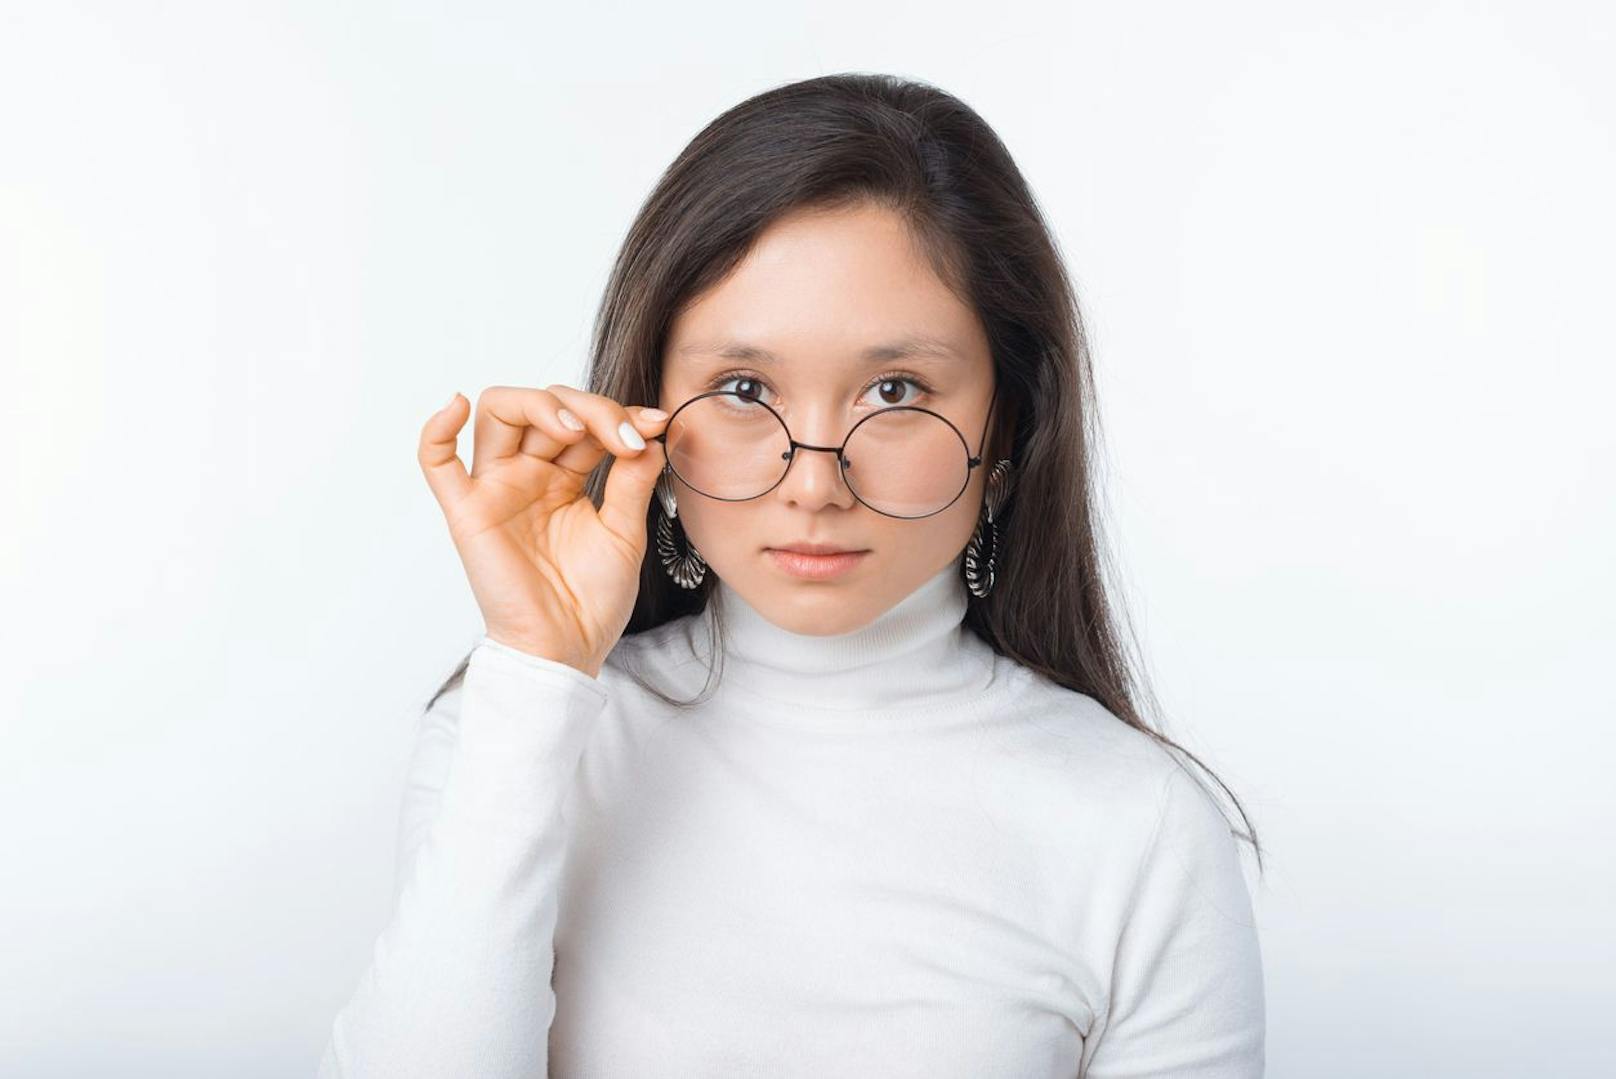 Eyeliner ist immer eine gute Wahl. Jedoch musst du darauf achten, dass dein Lidstrich bei einem dünneren Brillenrahmen eher dicker sein sollte und bei einem dickeren Rahmen eher dünner ausfallen kann. So wirken deine Augen schön harmonisch.